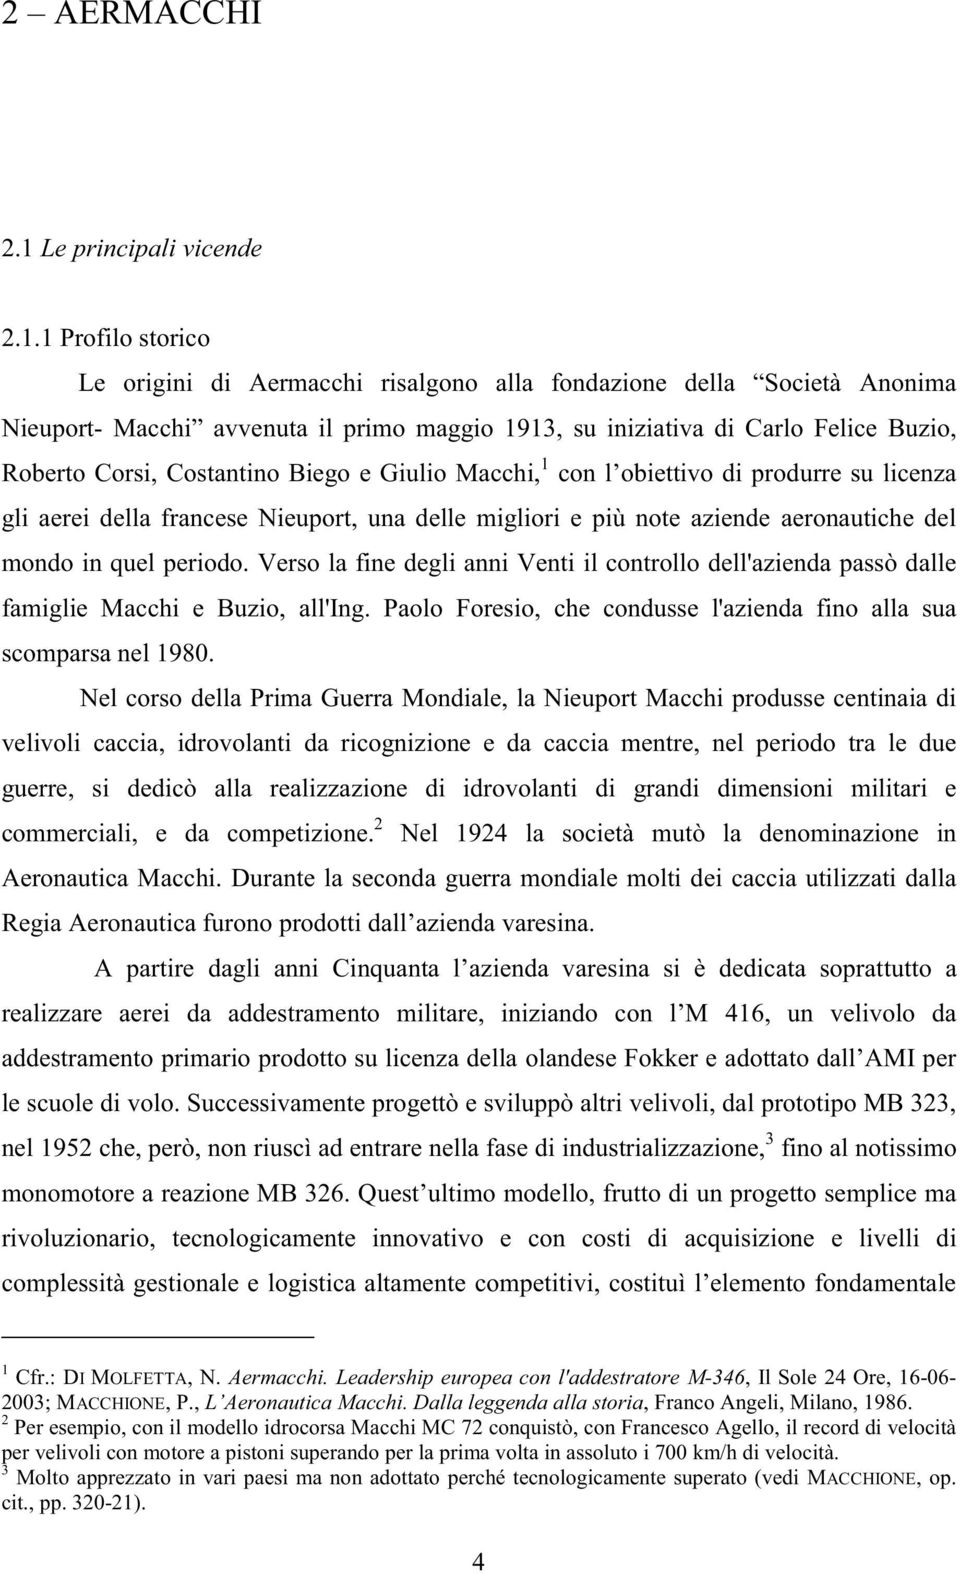 1 Profilo storico Le origini di Aermacchi risalgono alla fondazione della Società Anonima Nieuport- Macchi avvenuta il primo maggio 1913, su iniziativa di Carlo Felice Buzio, Roberto Corsi,